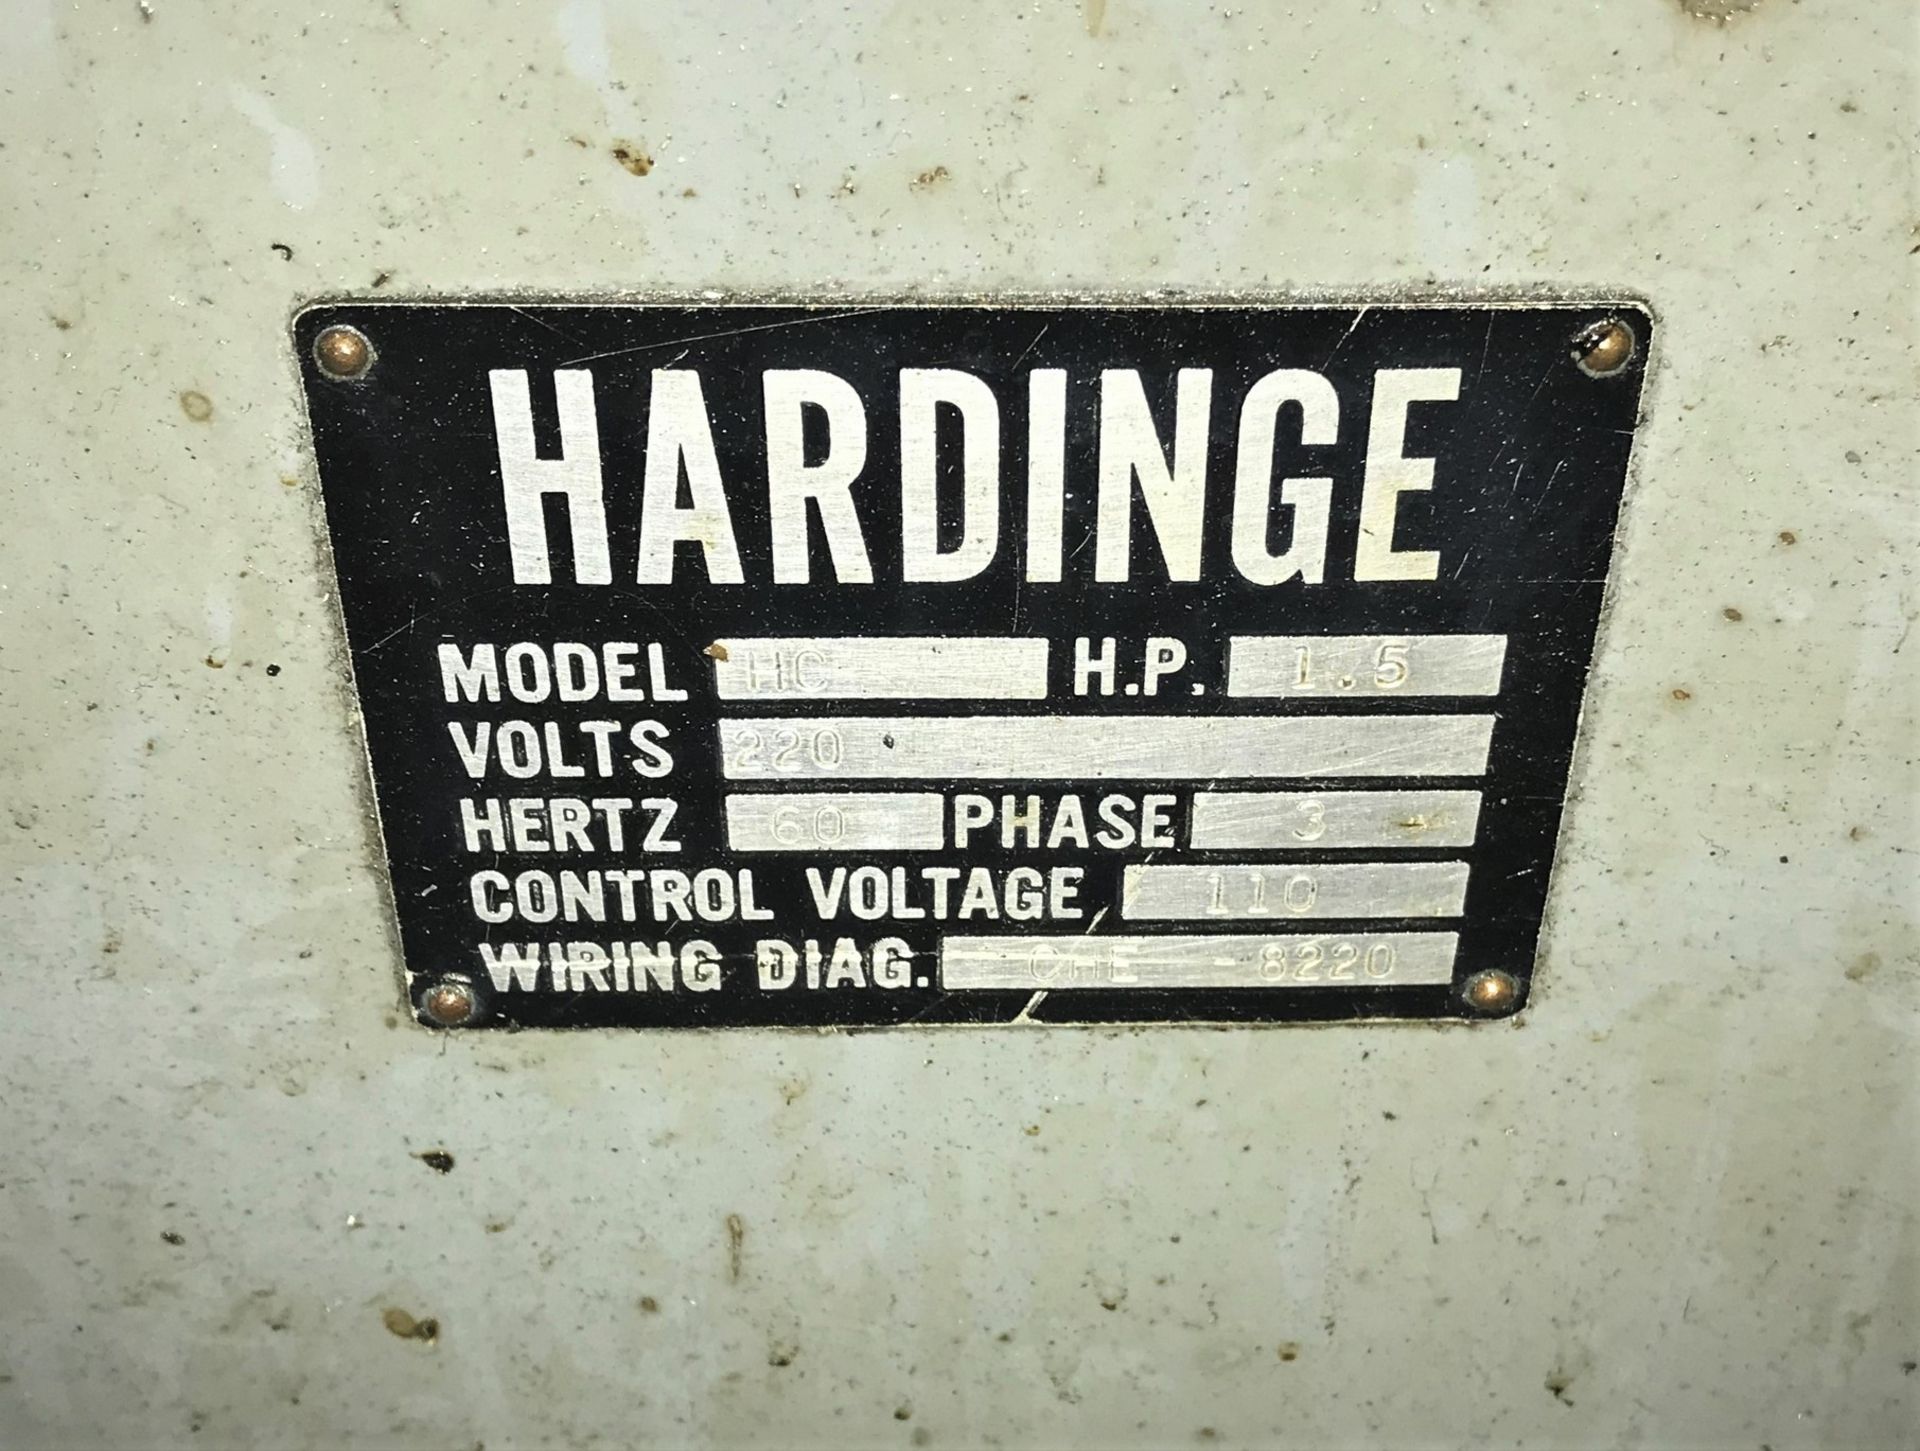 Hardinge HC Super Precision Chucking Lathe - Image 4 of 5